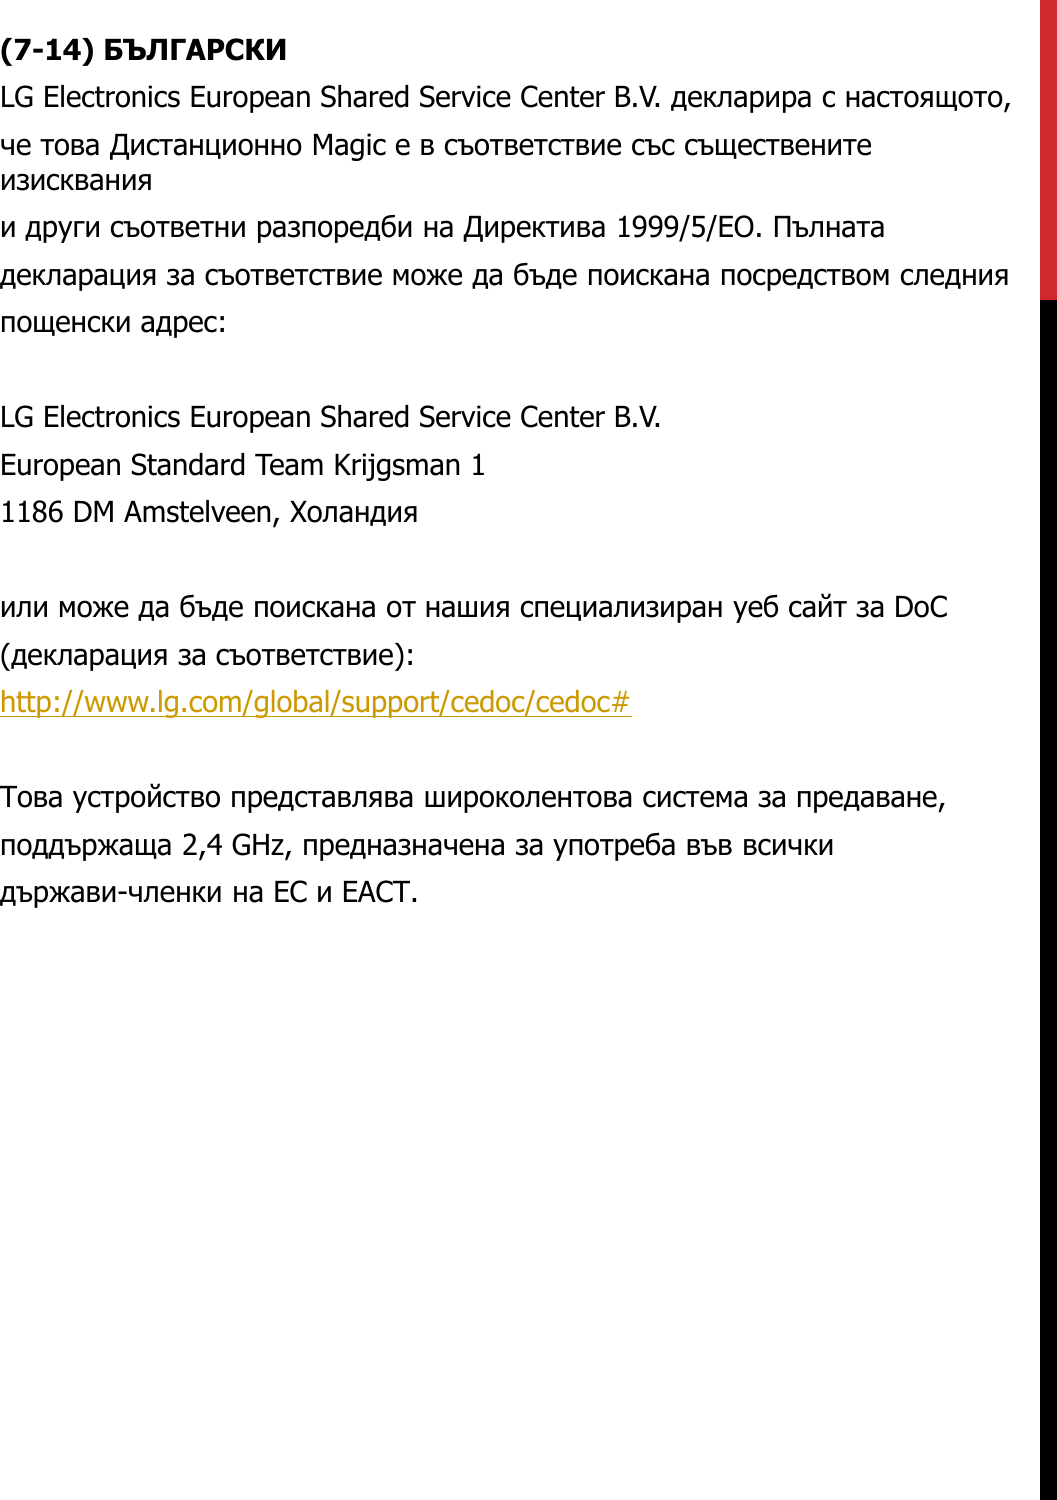 (7-14) БЪЛГАРСКИLG Electronics European Shared Service Center B.V. декларира с настоящото,че това Дистанционно Magic е в съответствие със съществените изискванияи други съответни разпоредби на Директива 1999/5/ЕО. Пълнатадекларация за съответствие може да бъде поискана посредством следнияпощенски адрес:LG Electronics European Shared Service Center B.V.European Standard Team Krijgsman 11186 DM Amstelveen, Холандияили може да бъде поискана от нашия специализиран уеб сайт за DoC(декларация за съответствие):http://www.lg.com/global/support/cedoc/cedoc#Това устройство представлява широколентова система за предаване,поддържаща 2,4 GHz, предназначена за употреба във всичкидържави-членки на ЕС и ЕАСТ.